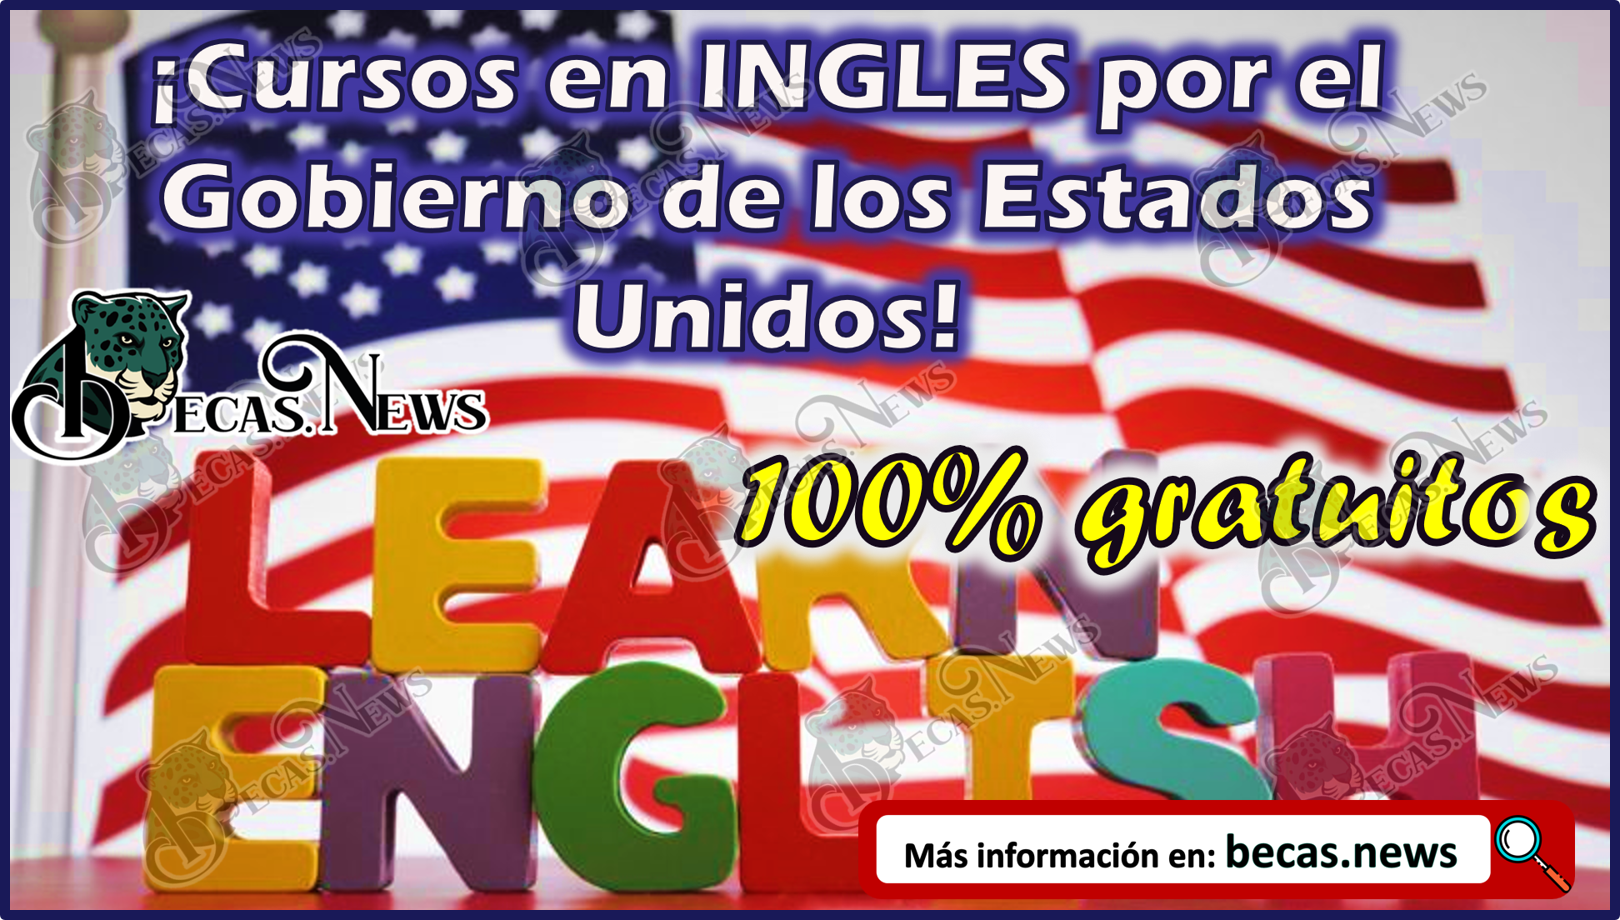 ¡Cursos en INGLES por el Gobierno de los Estados Unidos 100% GRATUITOS!